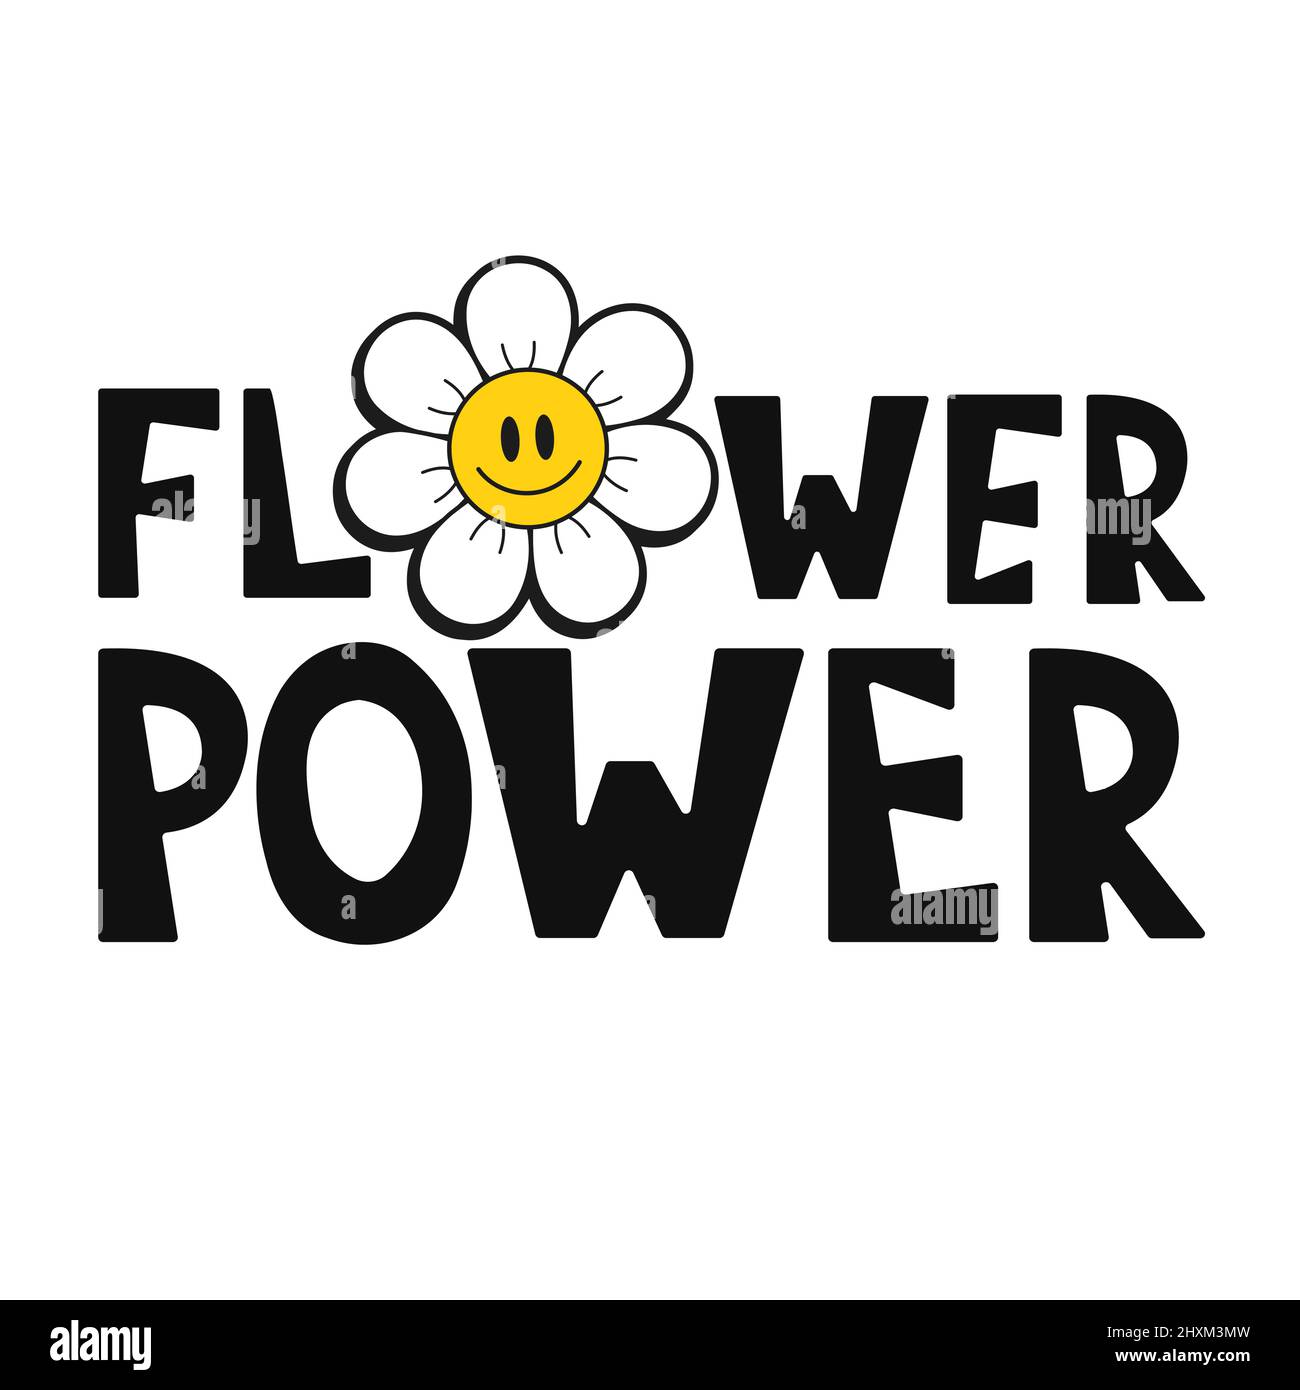 Lächeln Emoji Gesicht in Blume T-Shirt-Druck-Design.Flower Power Slogan.Vector handgezeichnete trendige Cartoon-Logo Illustration.Hippie Lächeln Gesicht, 60s, 70s, groovy Mode-Druck für T-Shirt, Poster-Konzept Stock Vektor